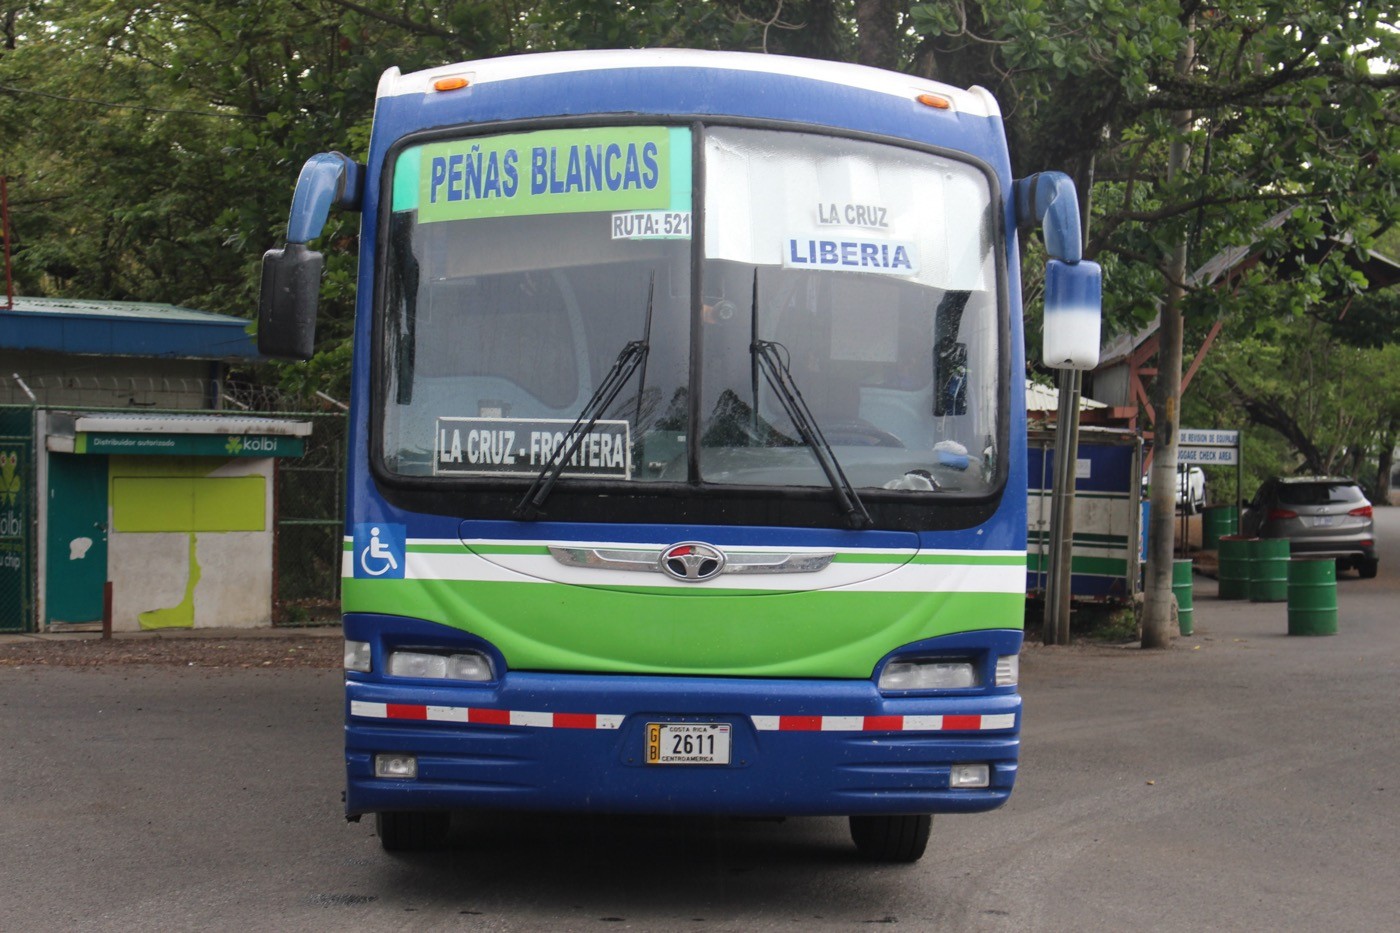 Autobuseros piden claridad al CTP: “Conductor no tiene el poder de policía para negar el servicio a las personas”